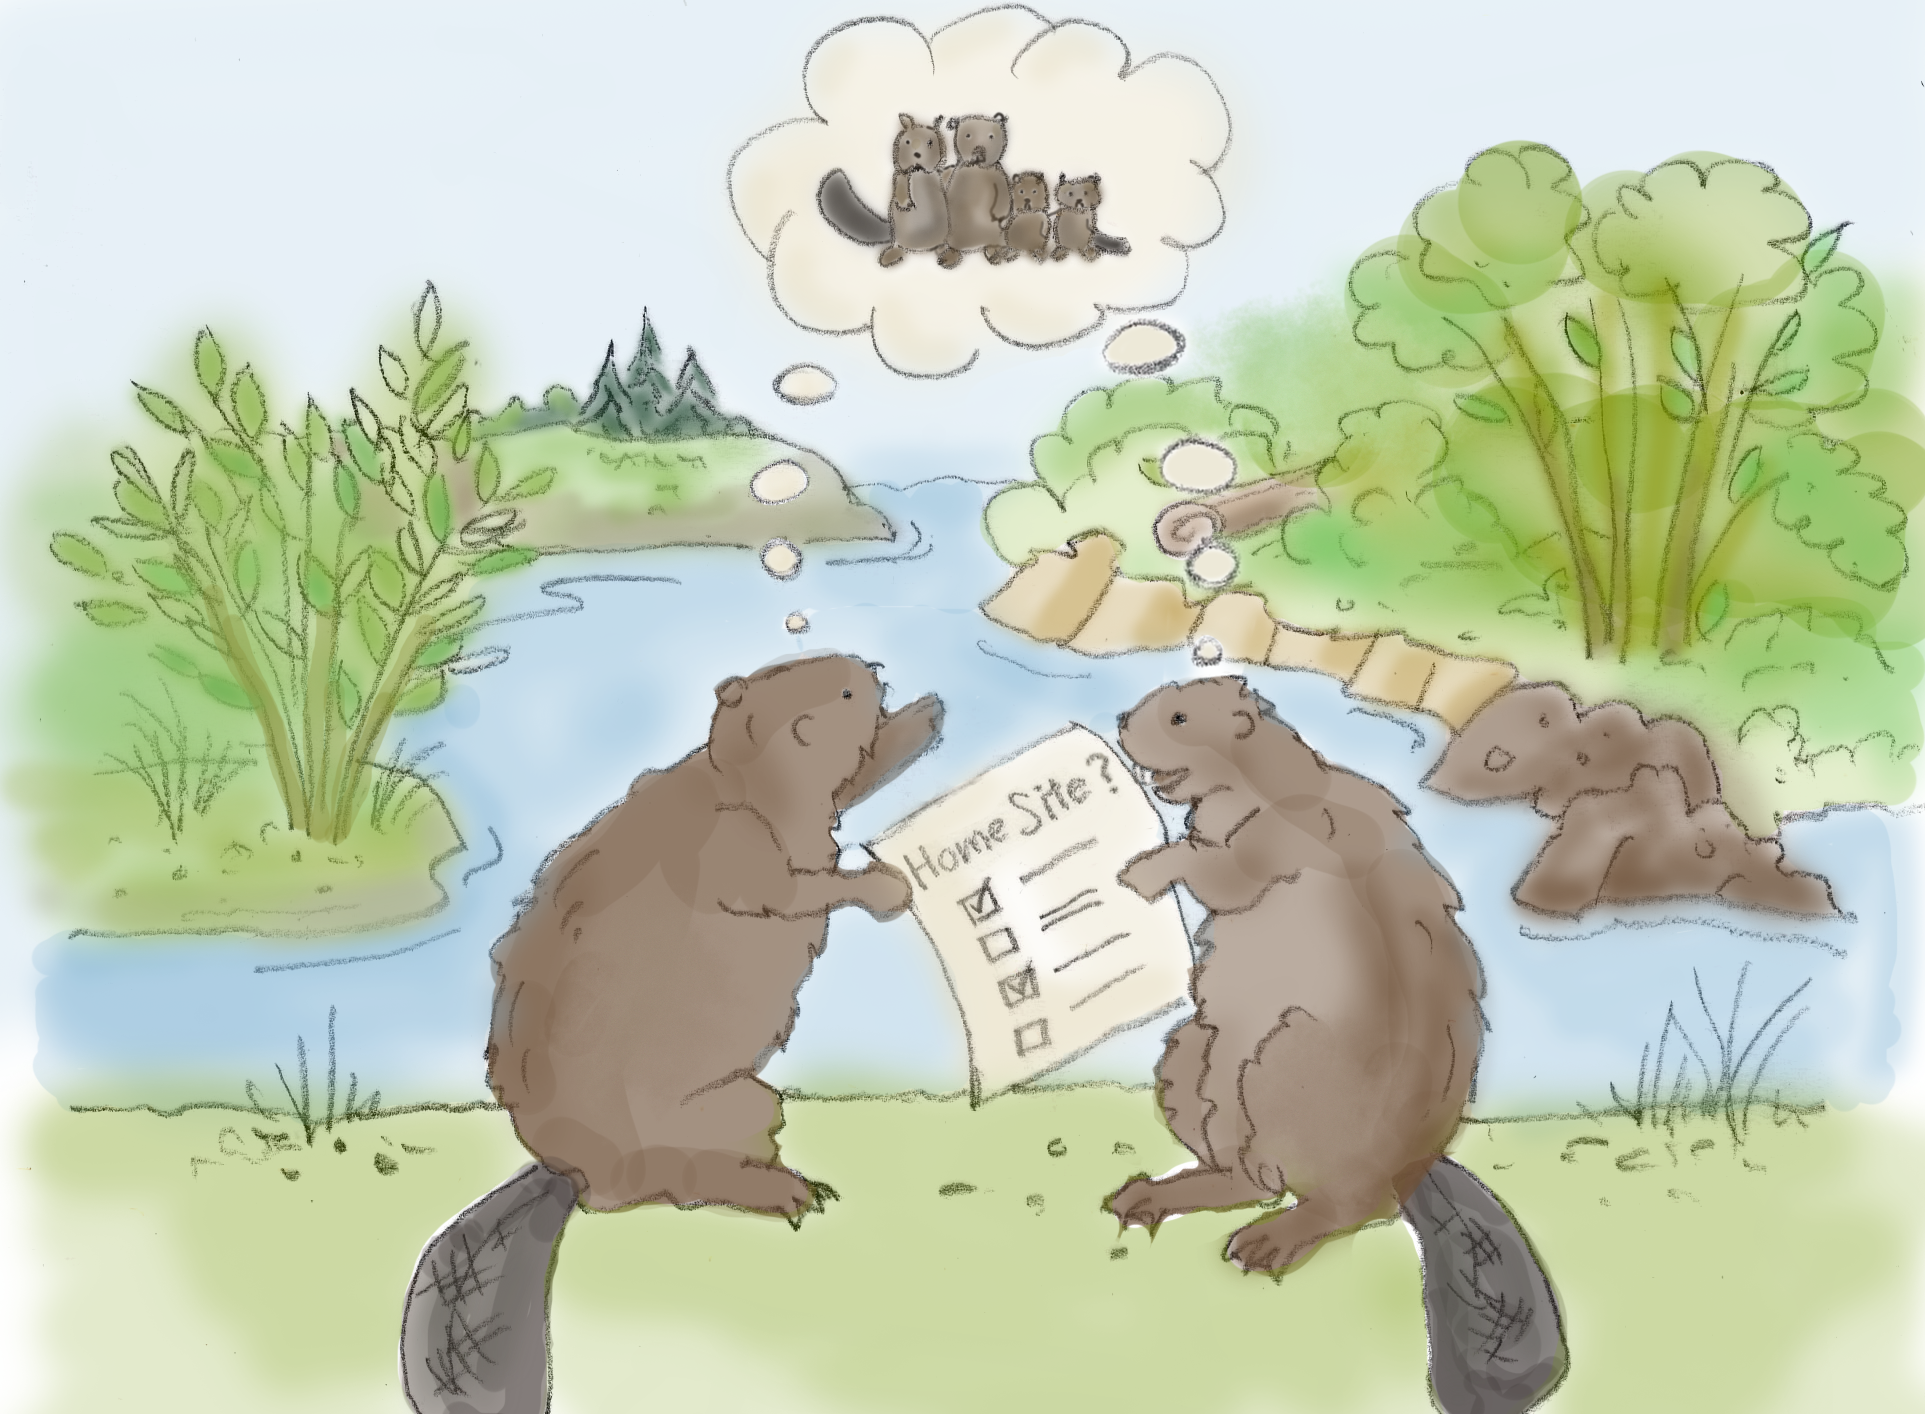 beaver-pair-considering-settlement-site-for-home